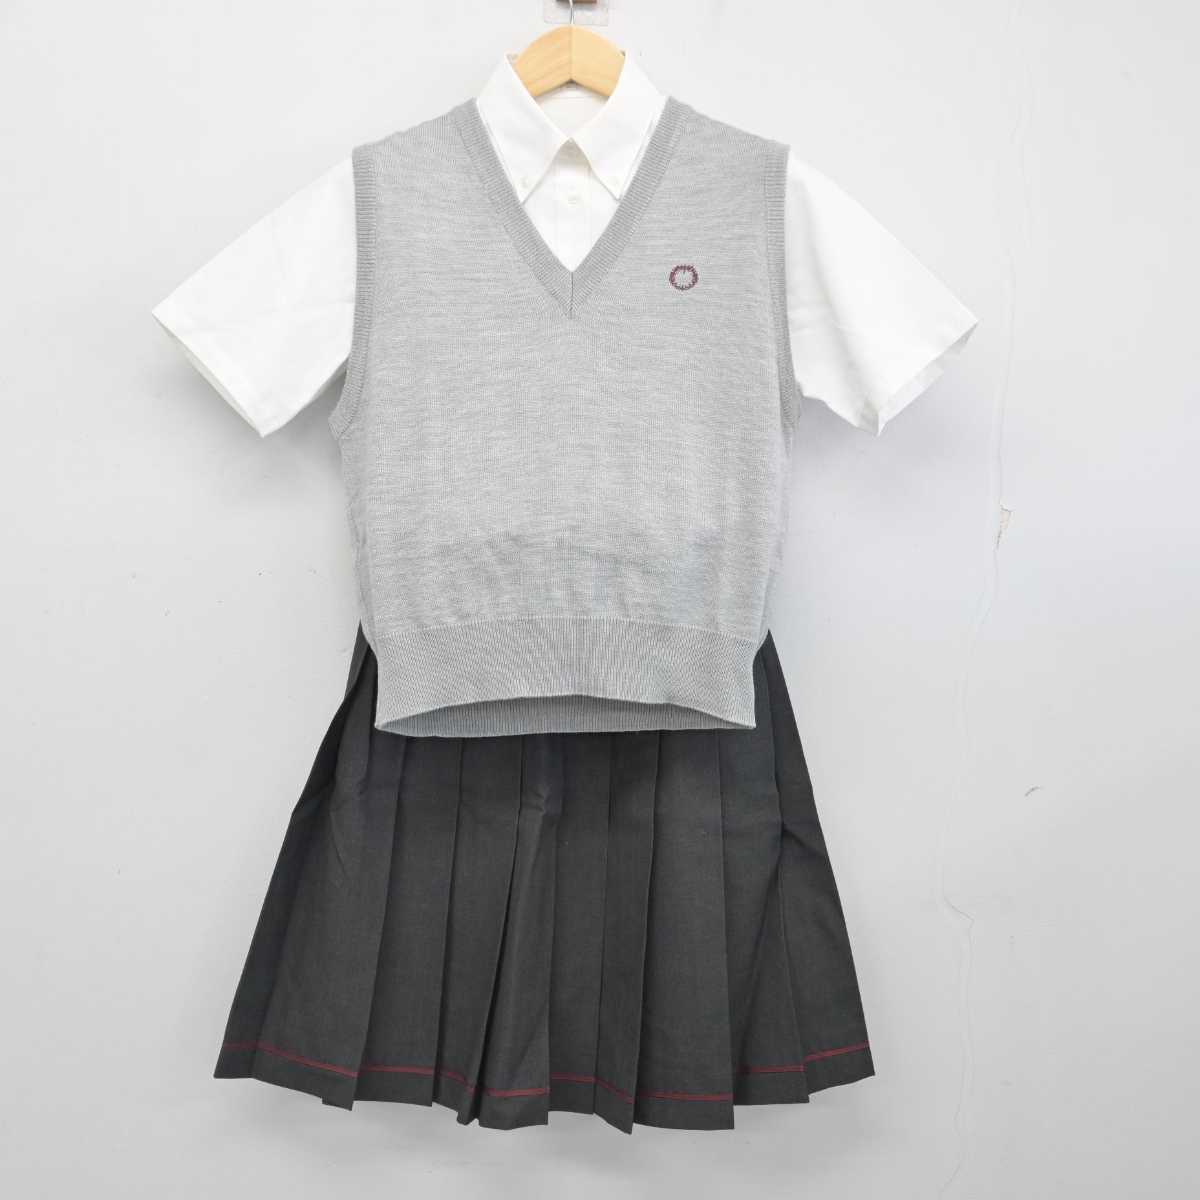 ▽東京都 桜美林高校 セーター (サイズL相当) ワンポイント校章刺繍 